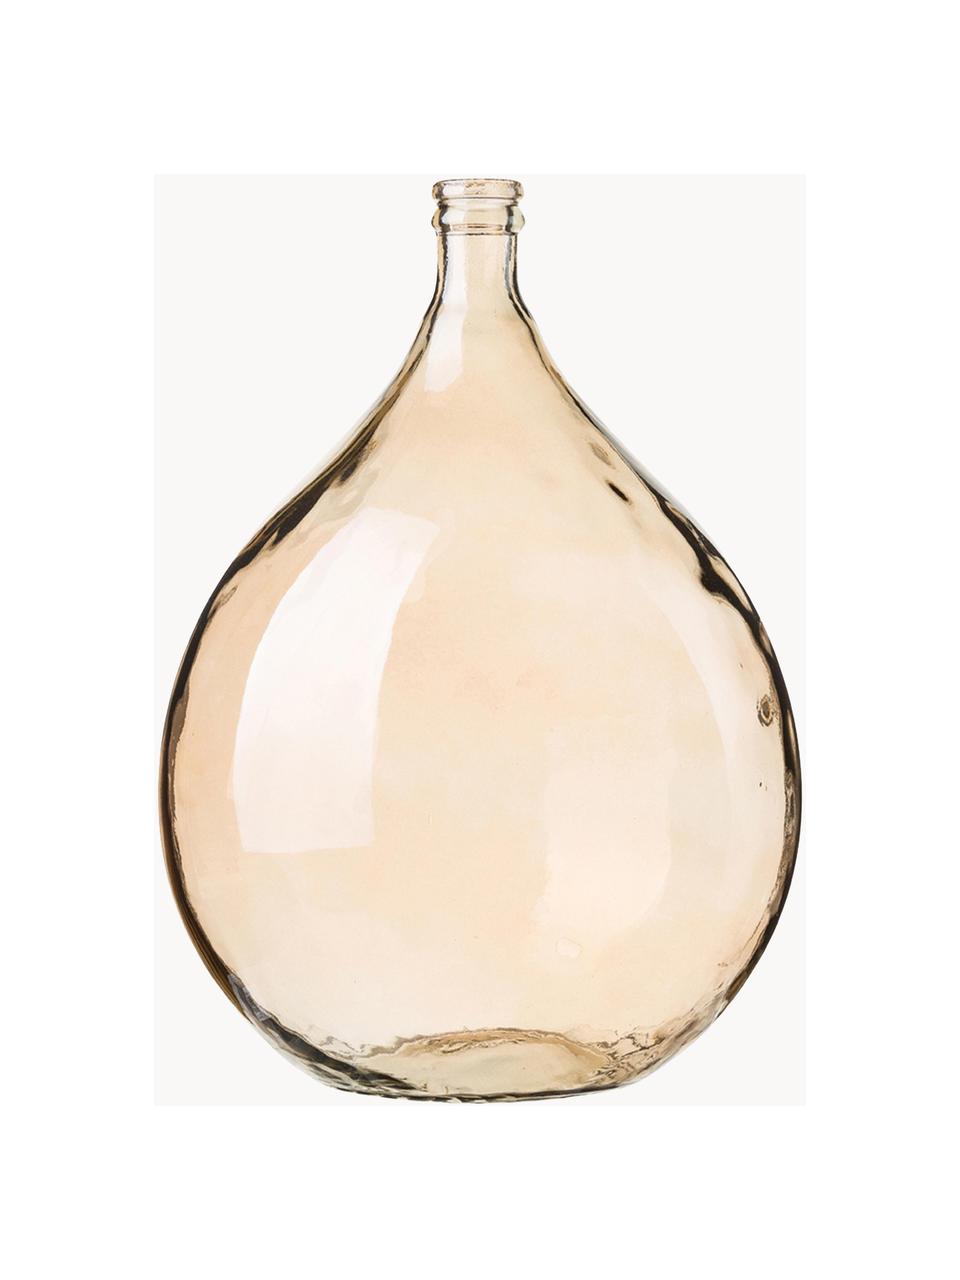 Vaso da terra in vetro riciclato Drop, alt. 56 cm, Vetro riciclato, Marrone chiaro, Ø 40 x Alt. 56 cm